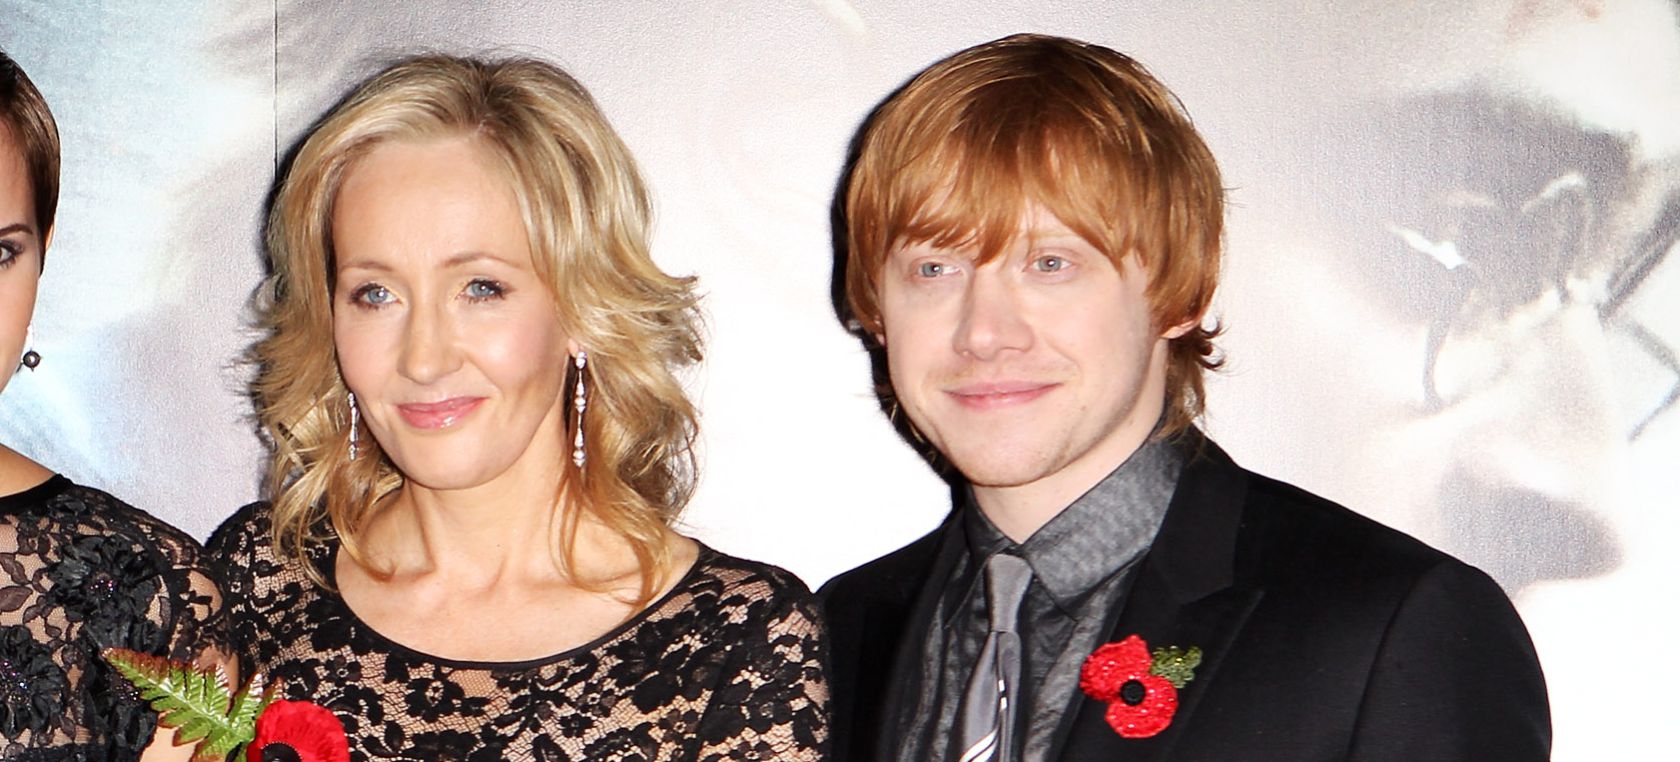 Rupert Grint habla sobre su relación con J.K. Rowling tras sus declaraciones: “La comparo con una tía”